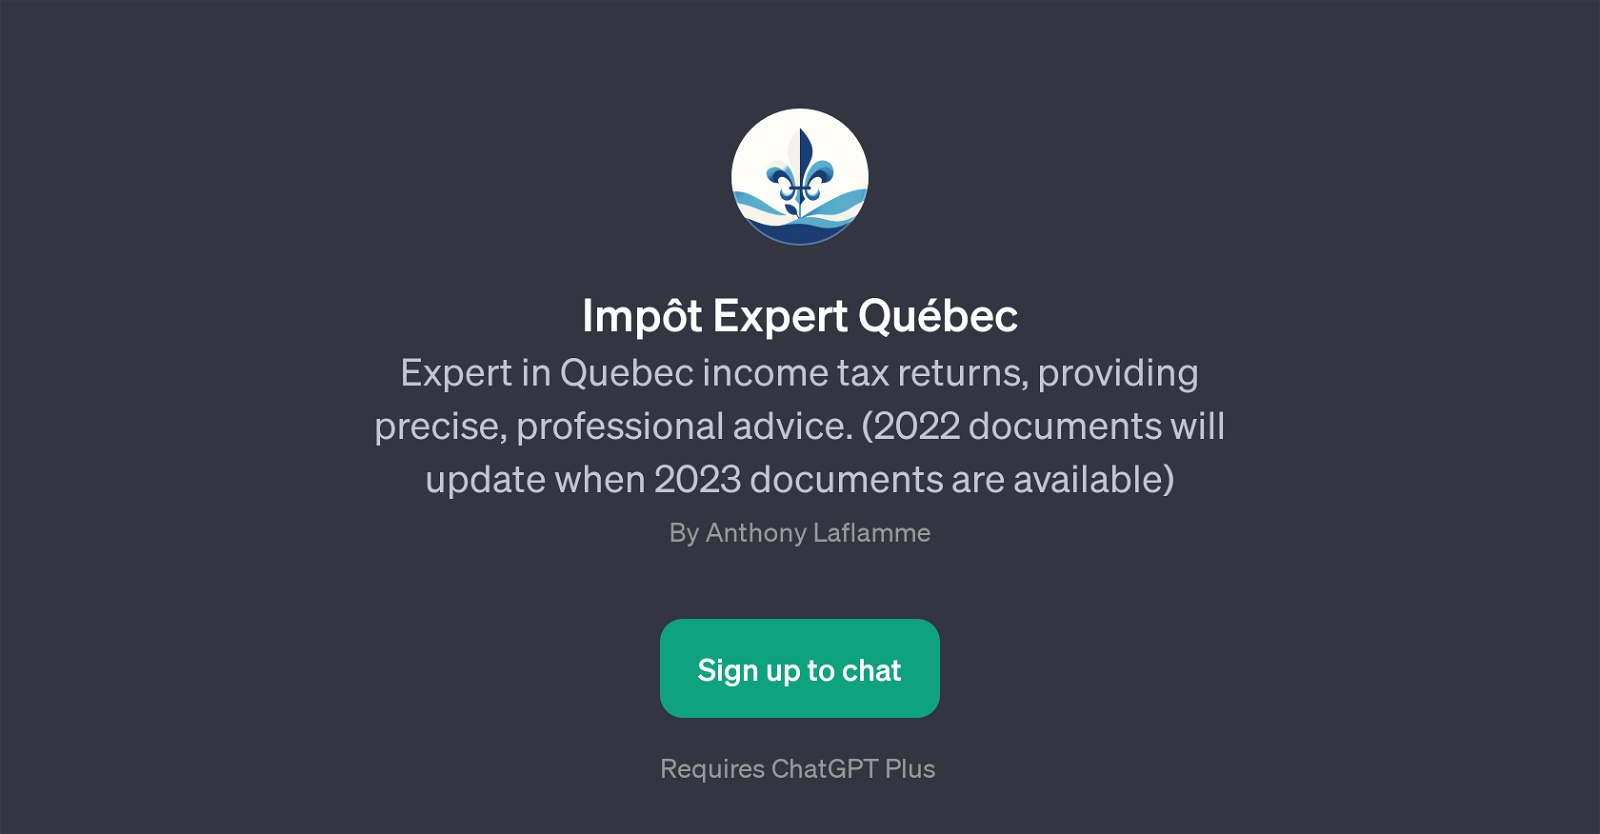 Impt Expert Qubec website